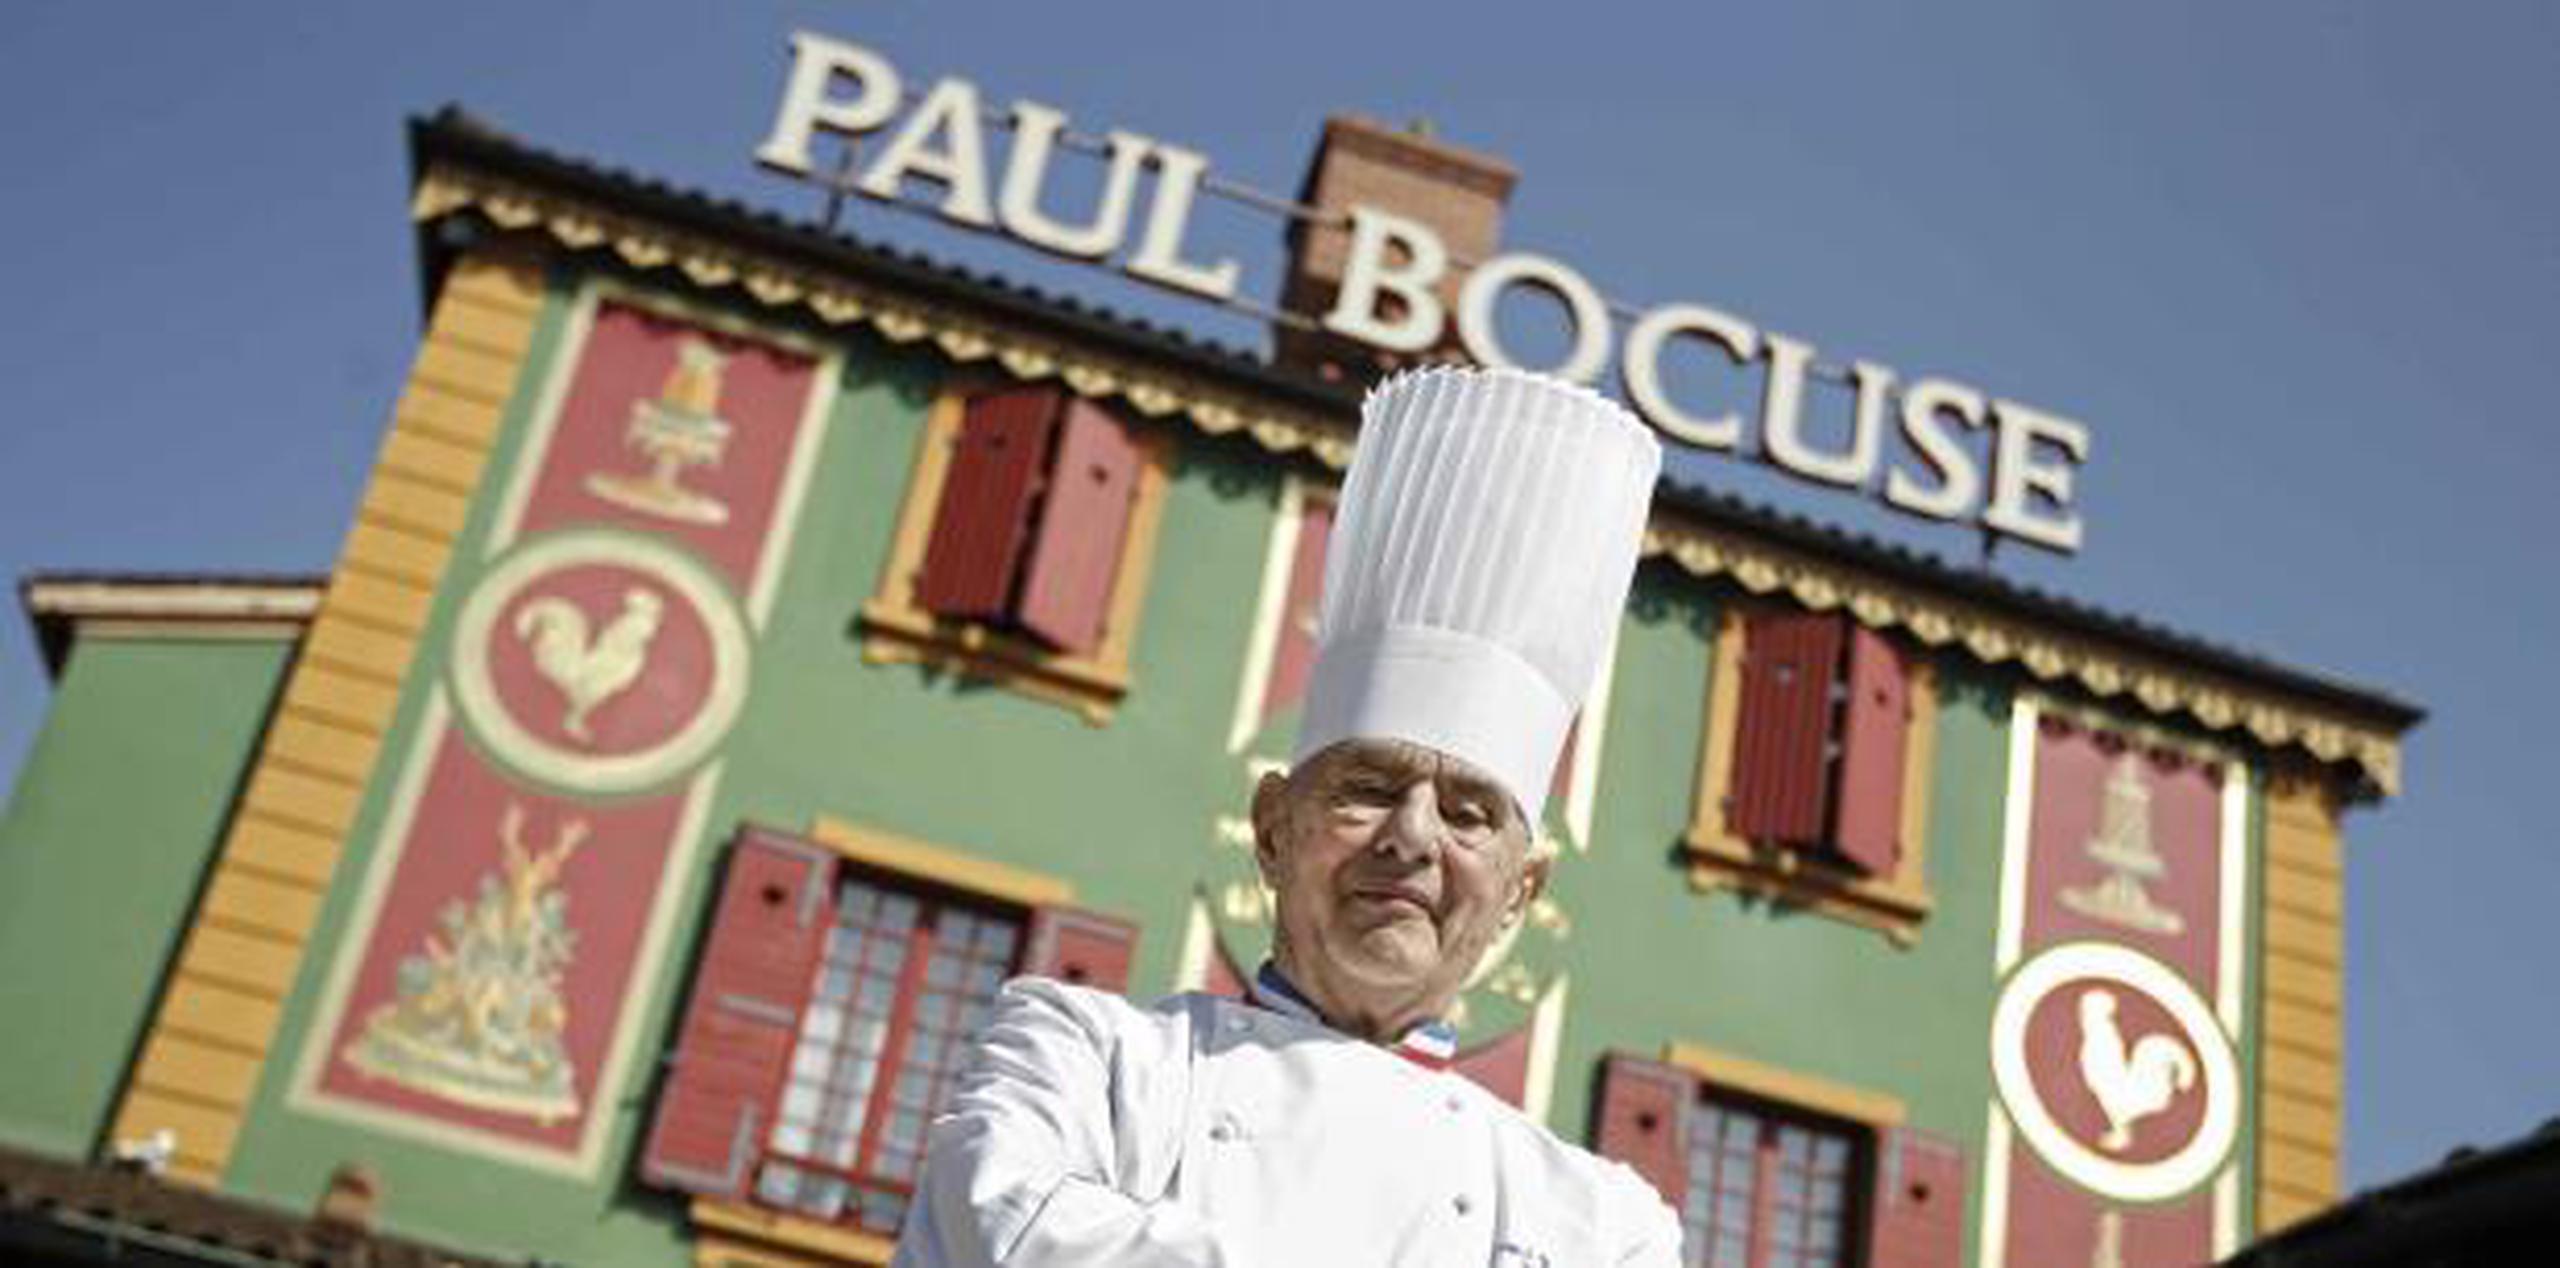 Paul Bocuse fue el primer chef en combinar el arte de cocinar con tácticas comerciales inteligentes. (AP / Laurent Cipriani)